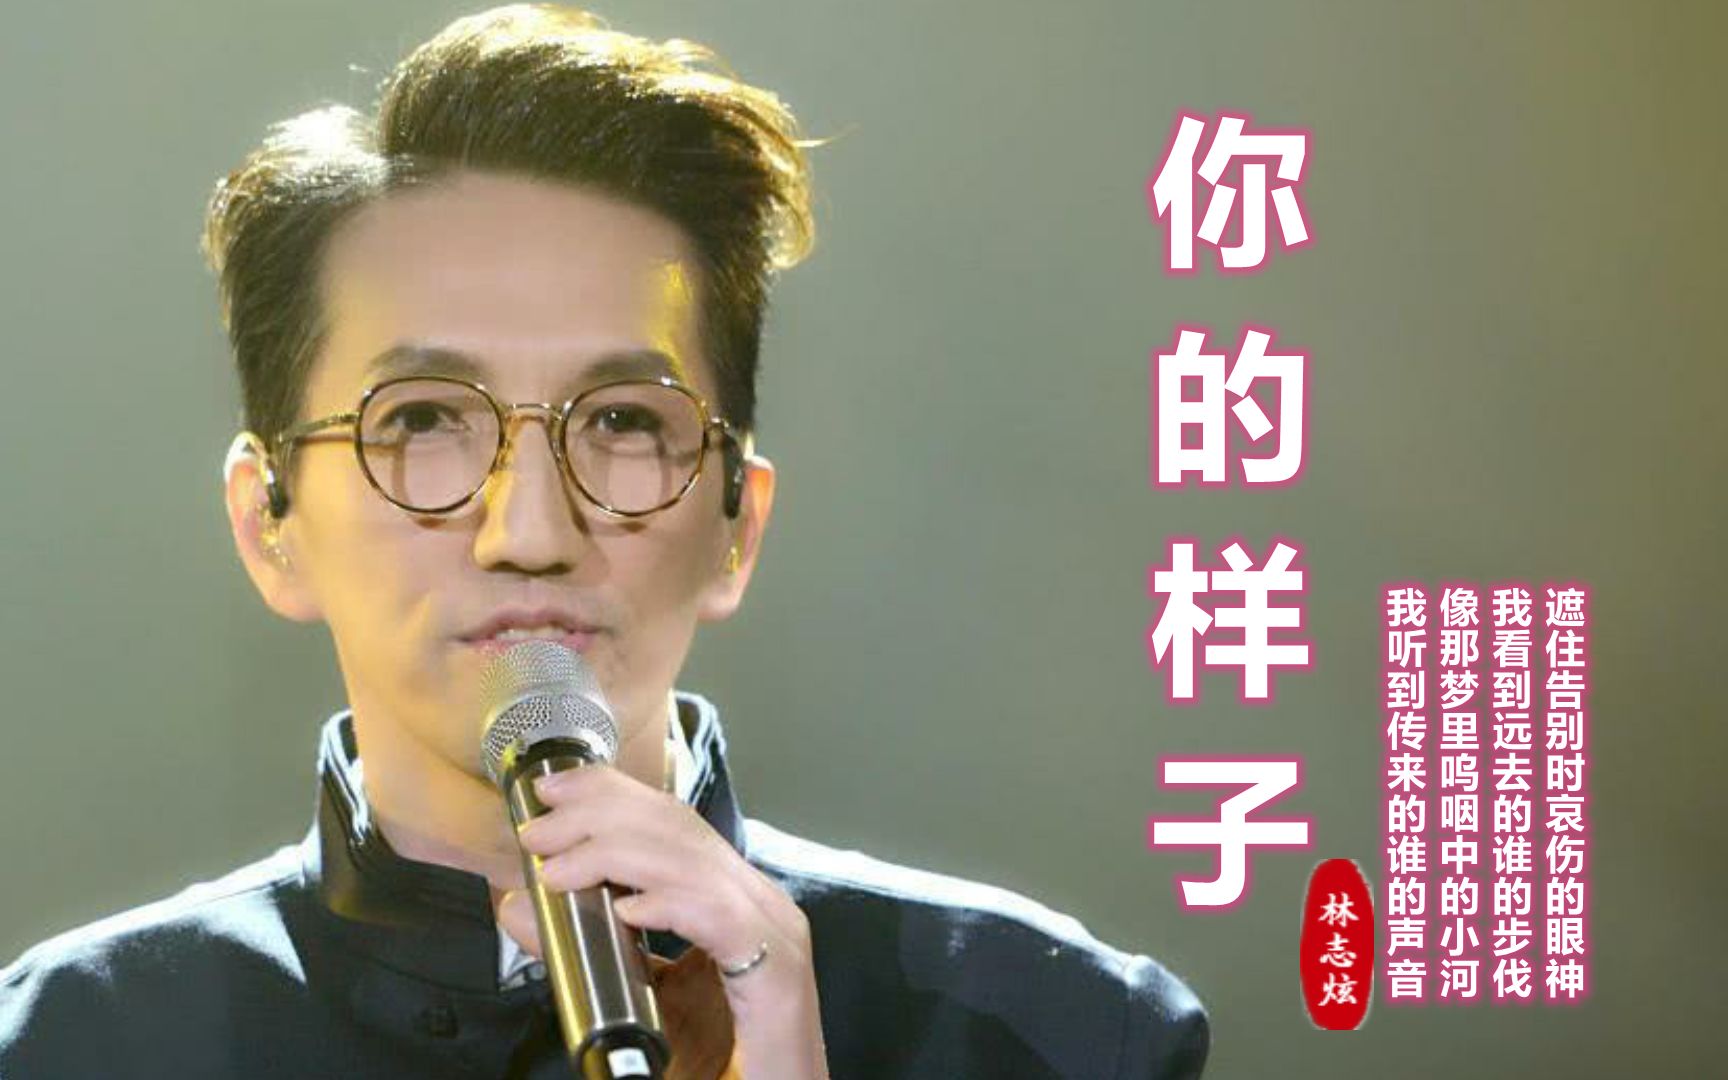 经典老歌《你的样子》,被很多歌手翻唱,林志炫似乎比原唱更好听